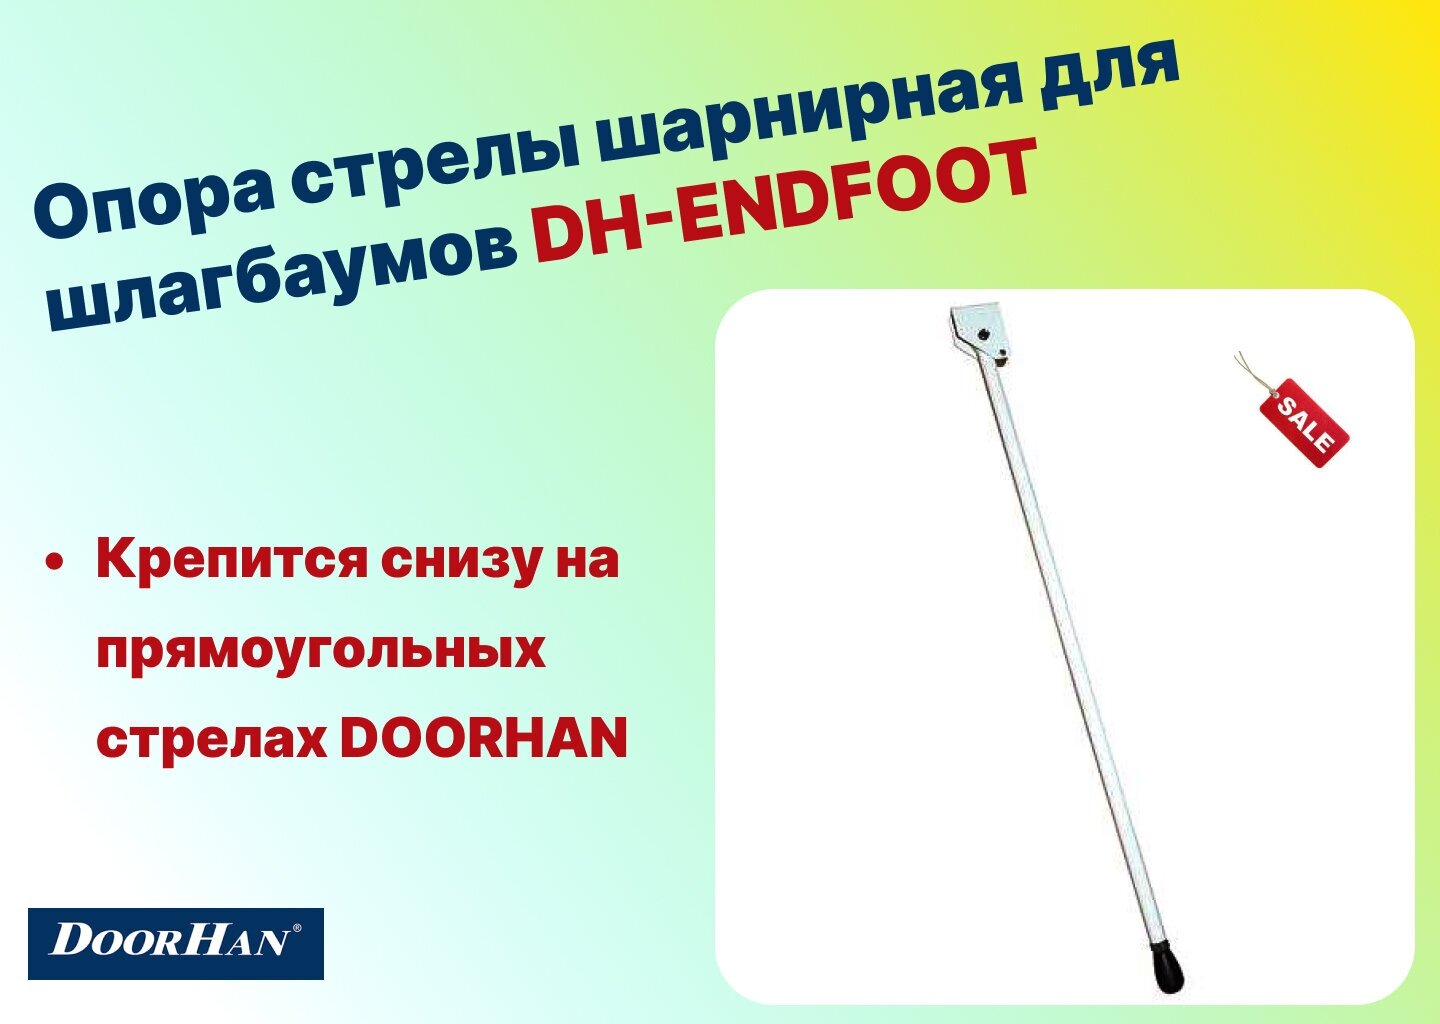 Опора стрелы шарнирная для шлагбаумов DH-ENDFOOT (DoorHan)